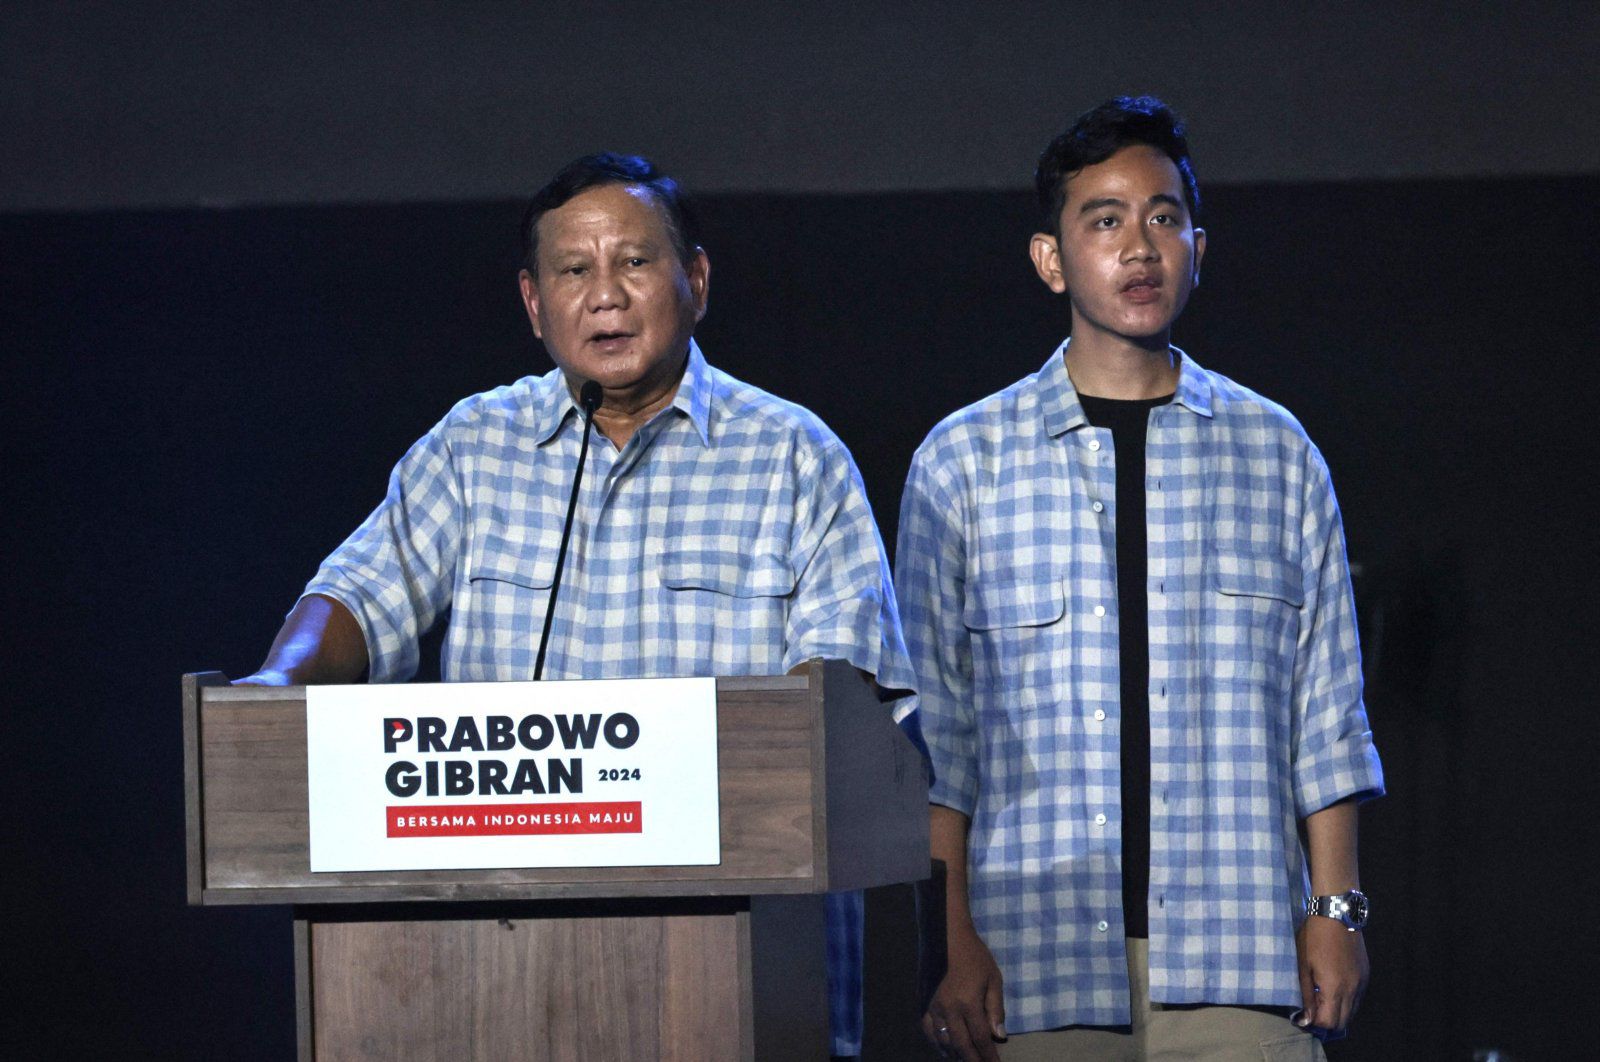 Ứng viên tổng thống&nbsp;Prabowo Subianto&nbsp;đứng cùng ứng viên phó tổng thống khi tuyên bố giành chiến thắng trong cuộc bầu cử.